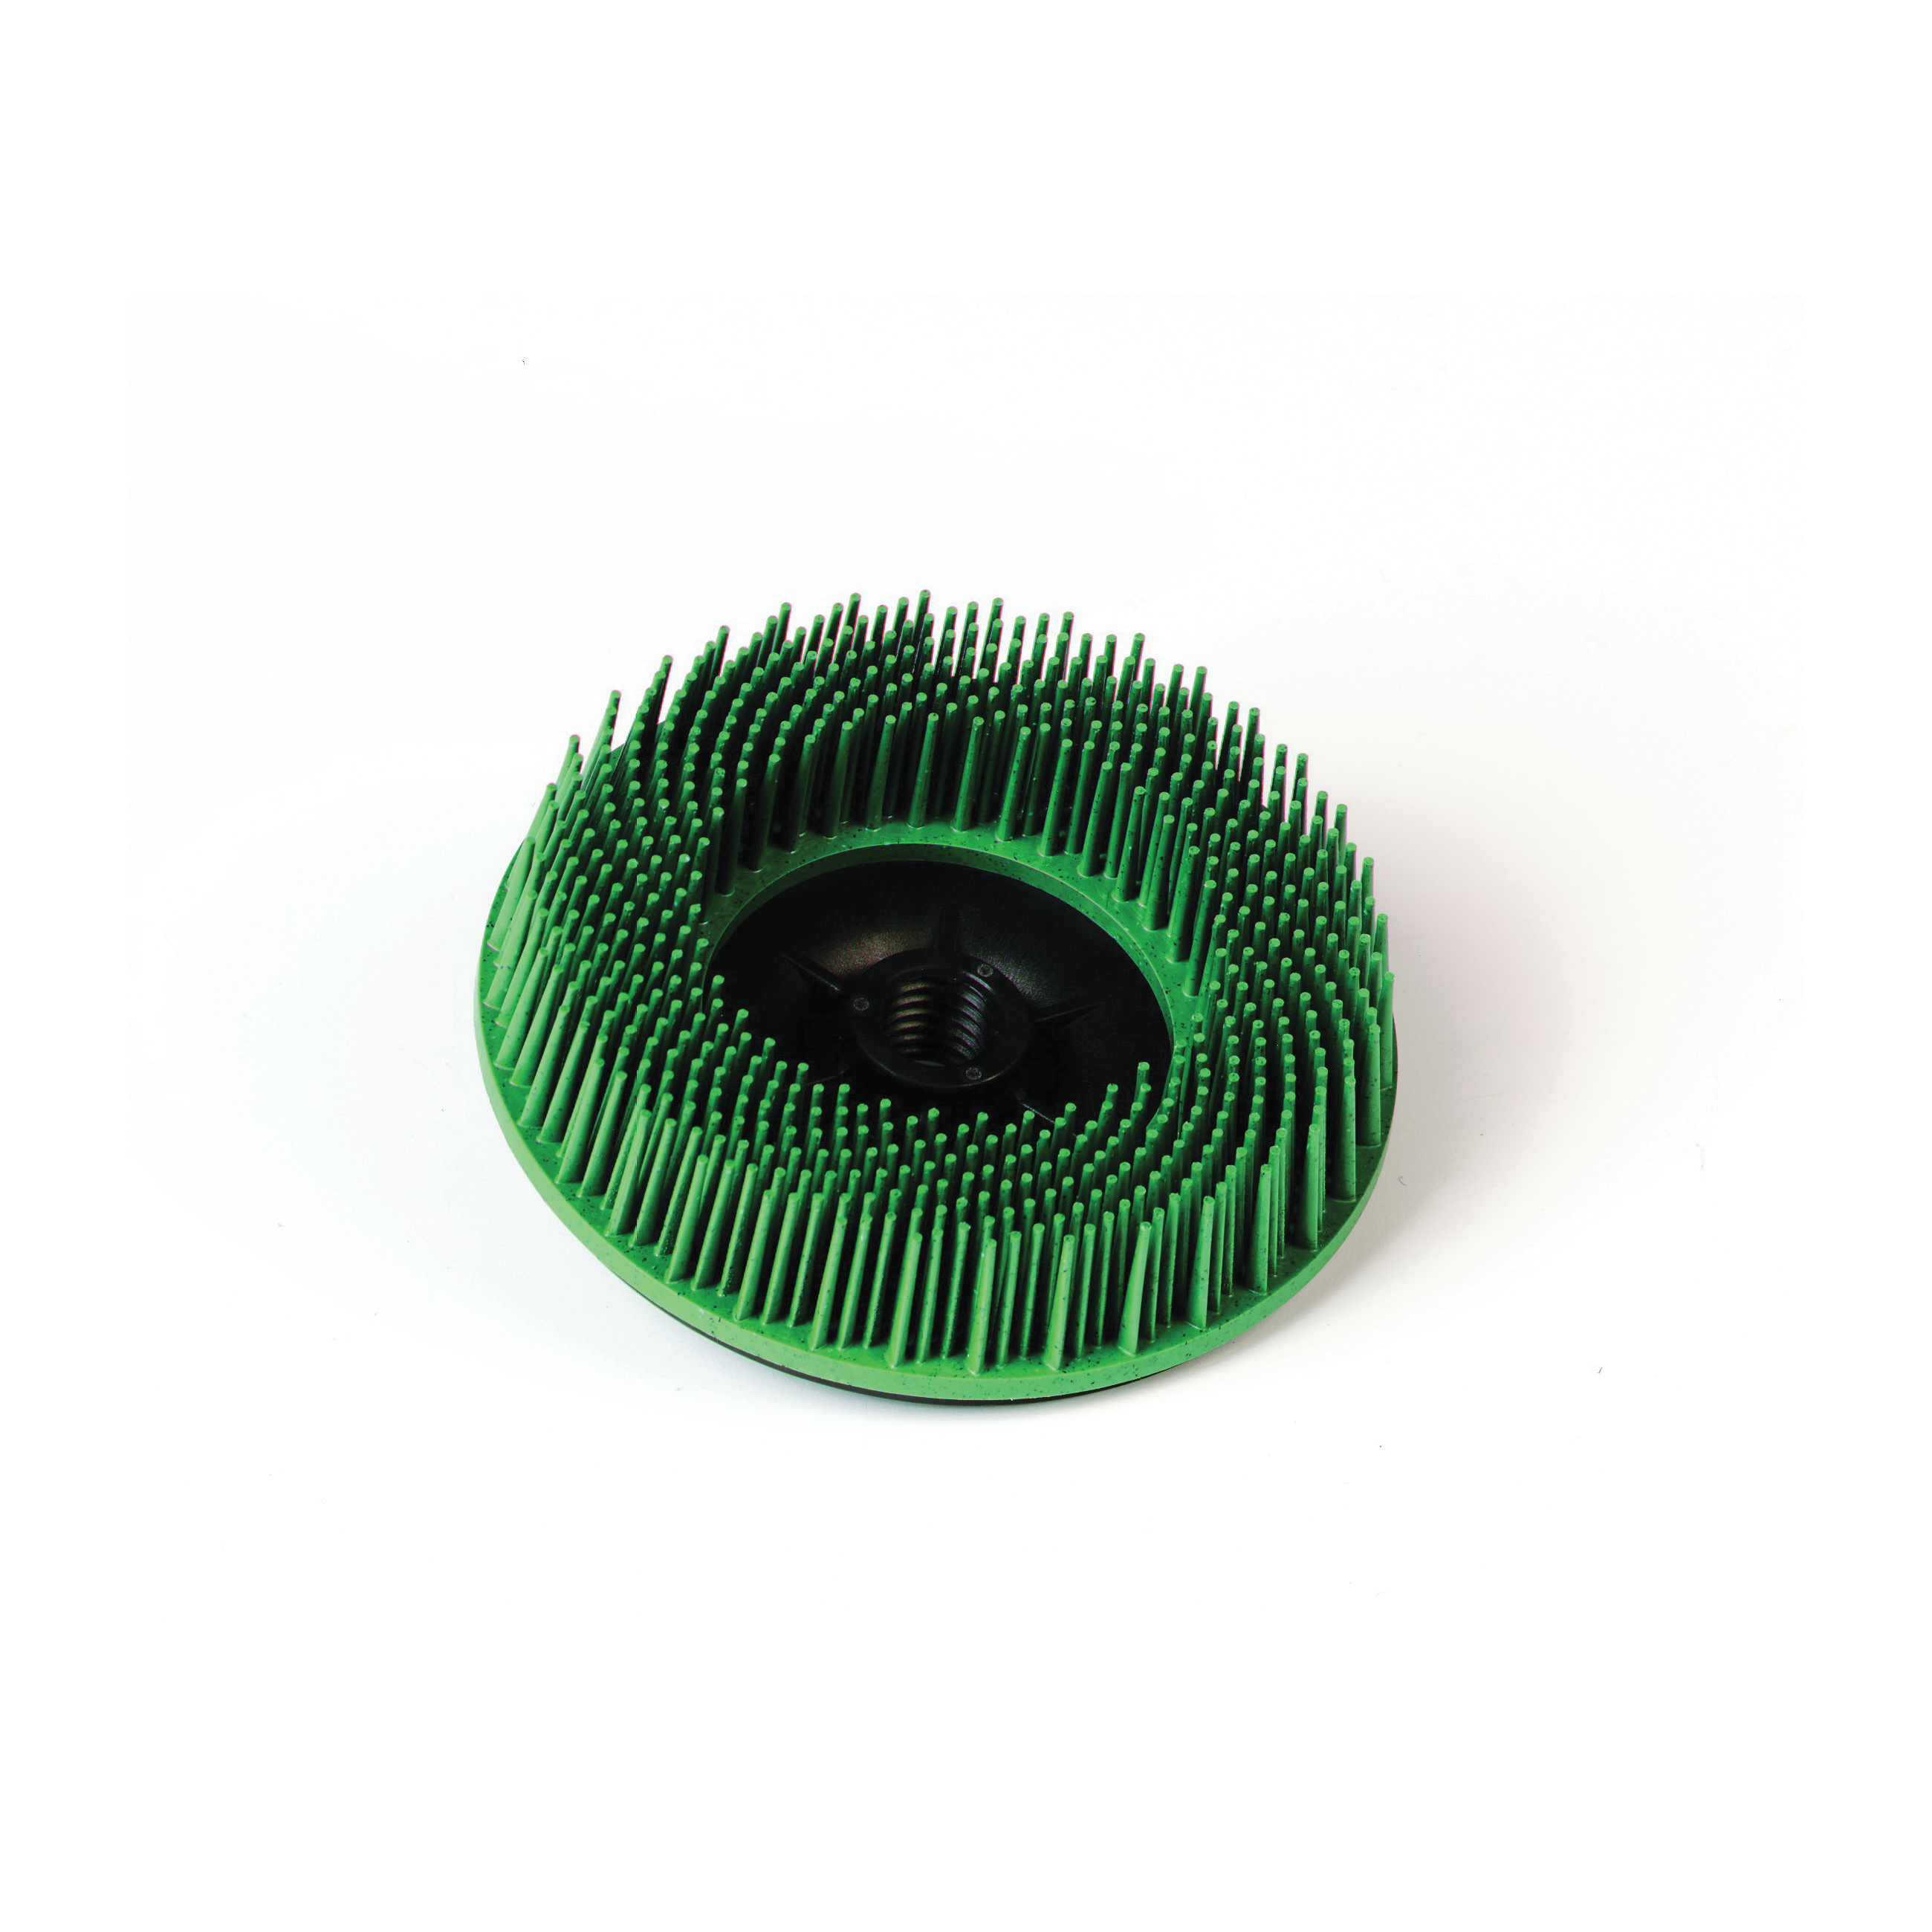 Osborn ATB™ Uni-Lok® 0004711300 Crimped Round Turbo Disc Brush, 8 in Dia Brush, 7/8 in Center Hole, 0.04 in Dia Filament/Wire, Silicon Carbide Fill